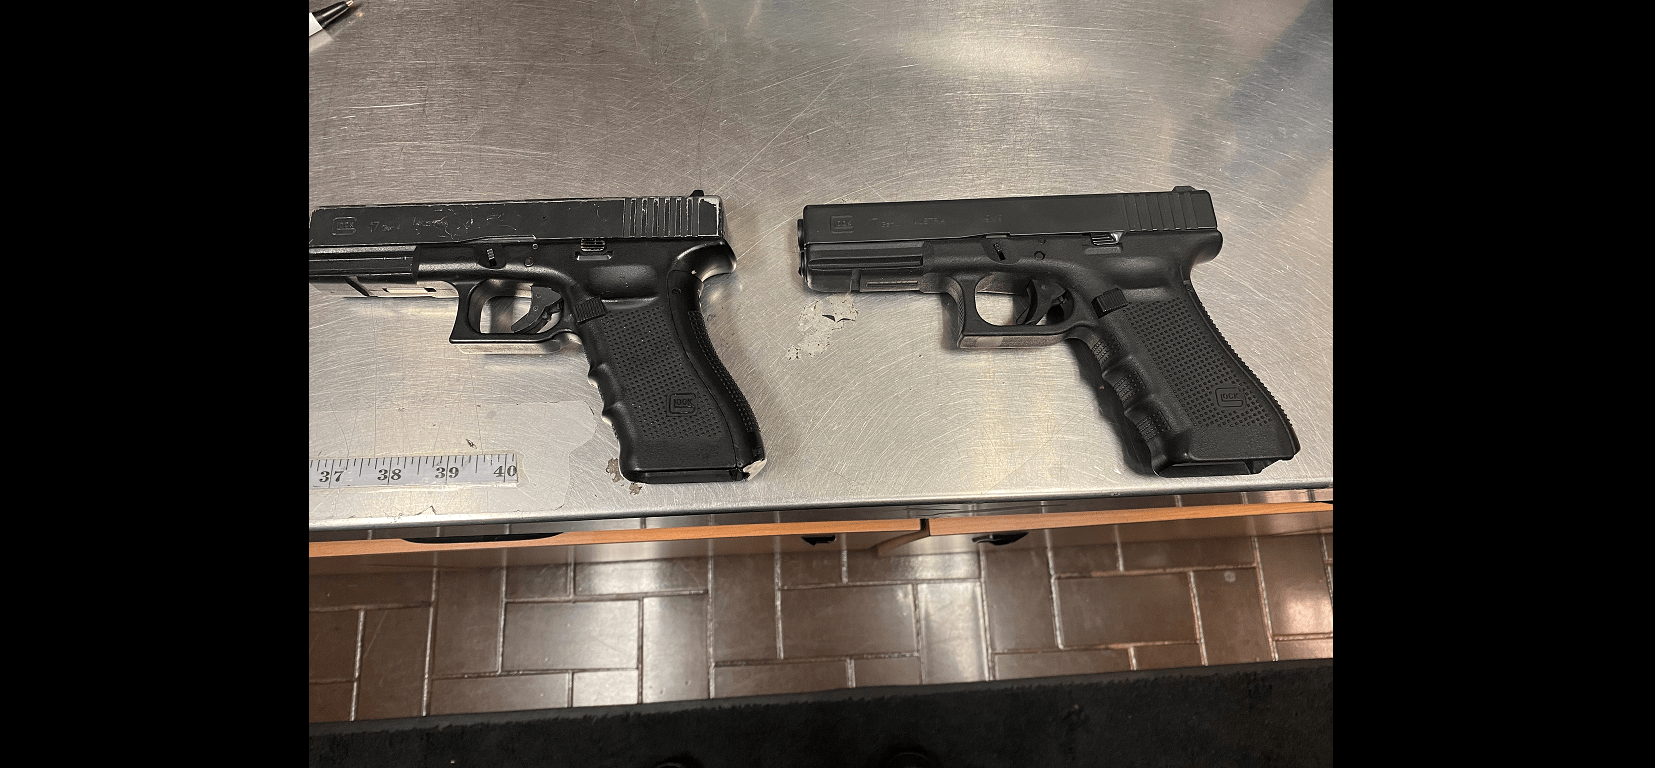 replica-handgun-next-to-real-handgun-santa-rosa-police